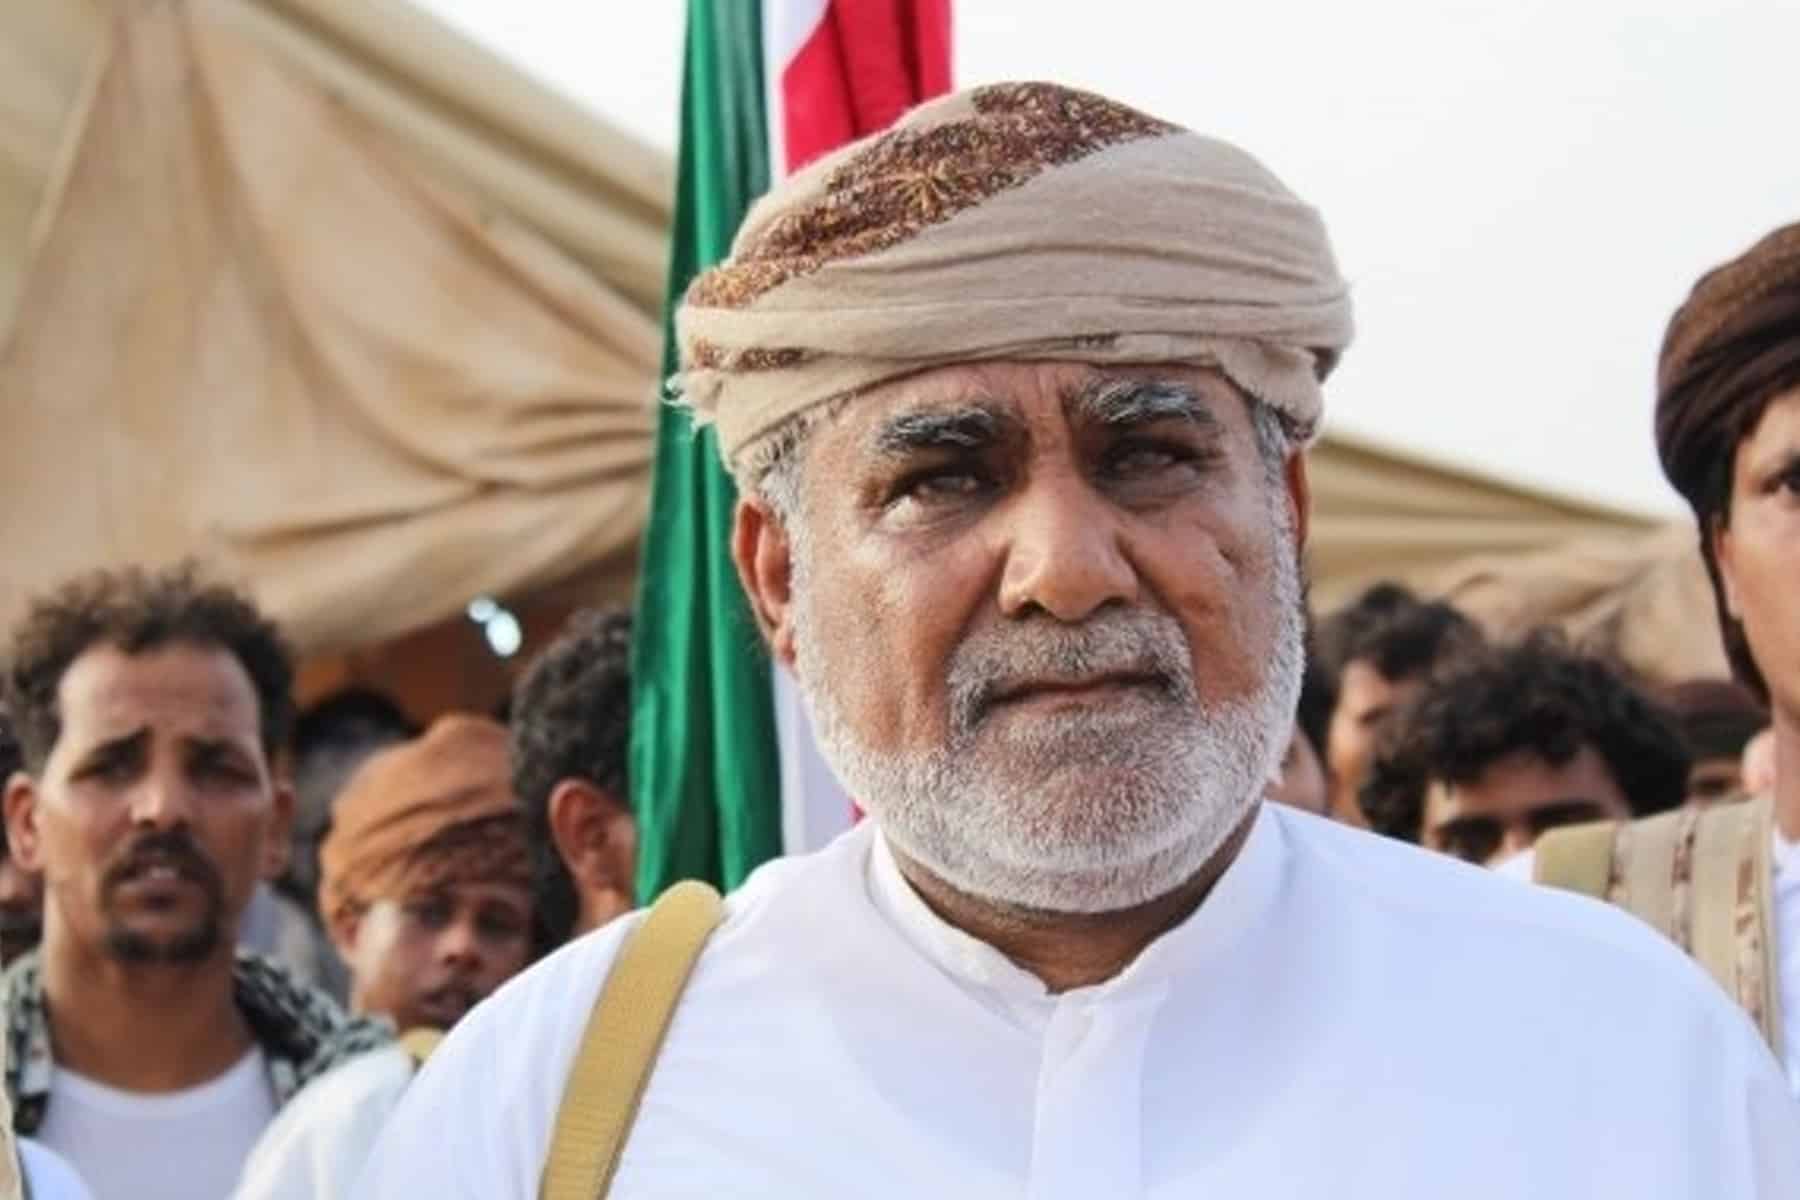 الشيخ الحريزي يهدد مليشيات السعودية watanserb.com